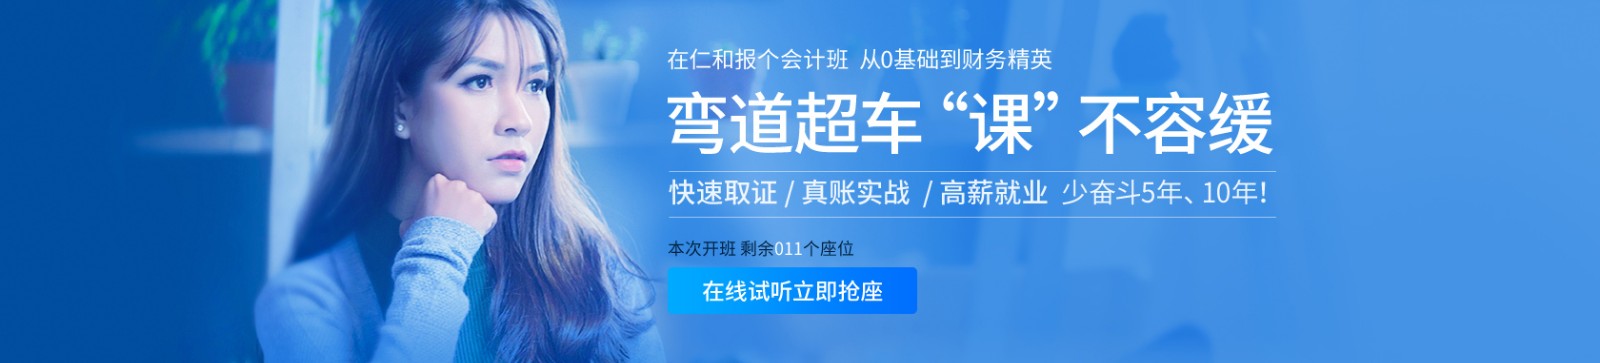 荆州仁和会计培训学校 横幅广告